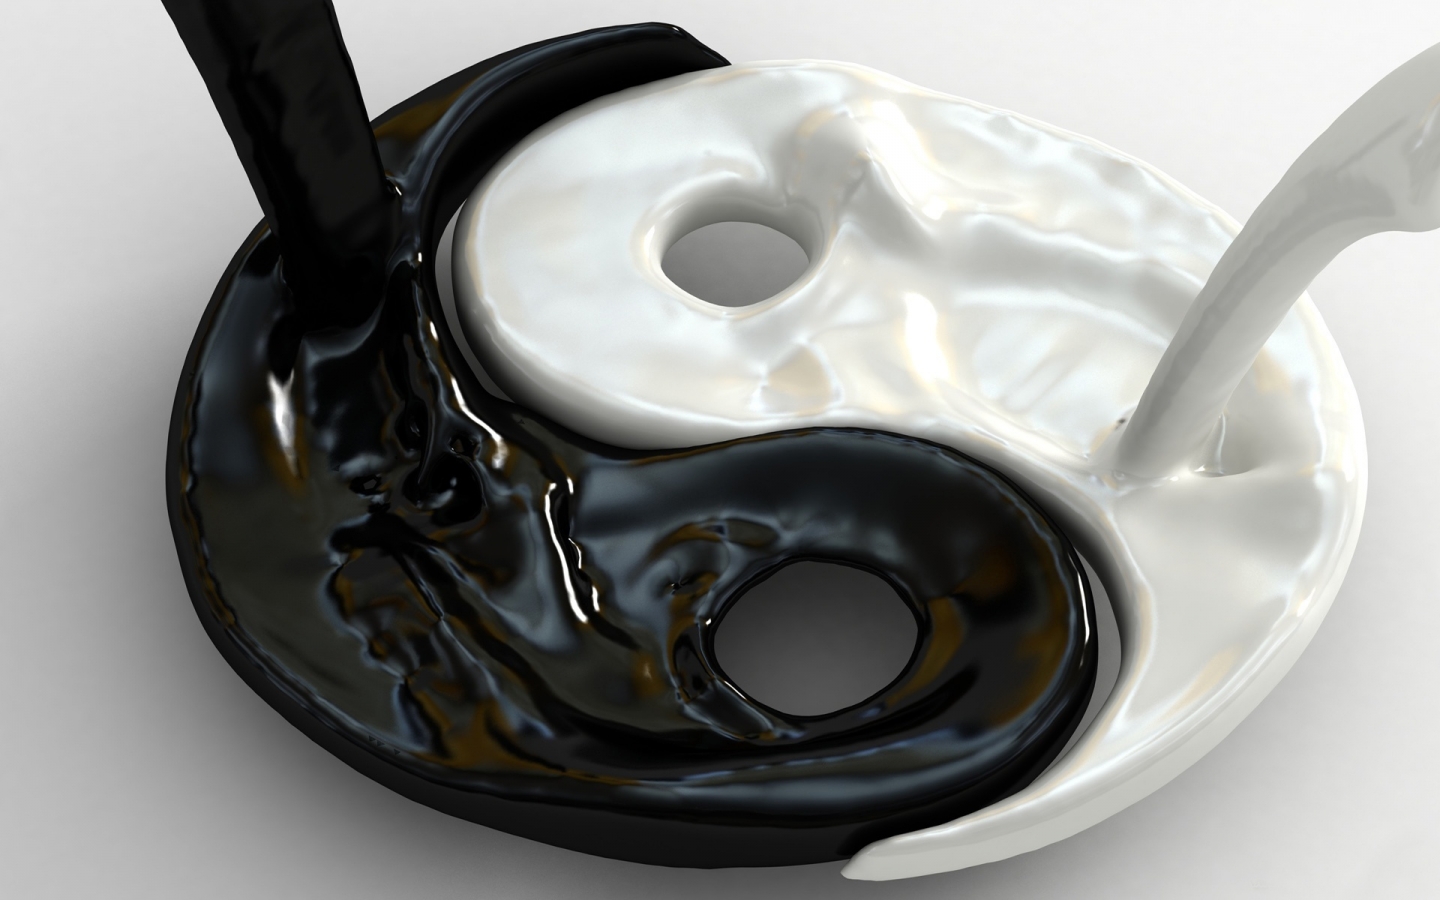 Yin Yang for 1440 x 900 widescreen resolution